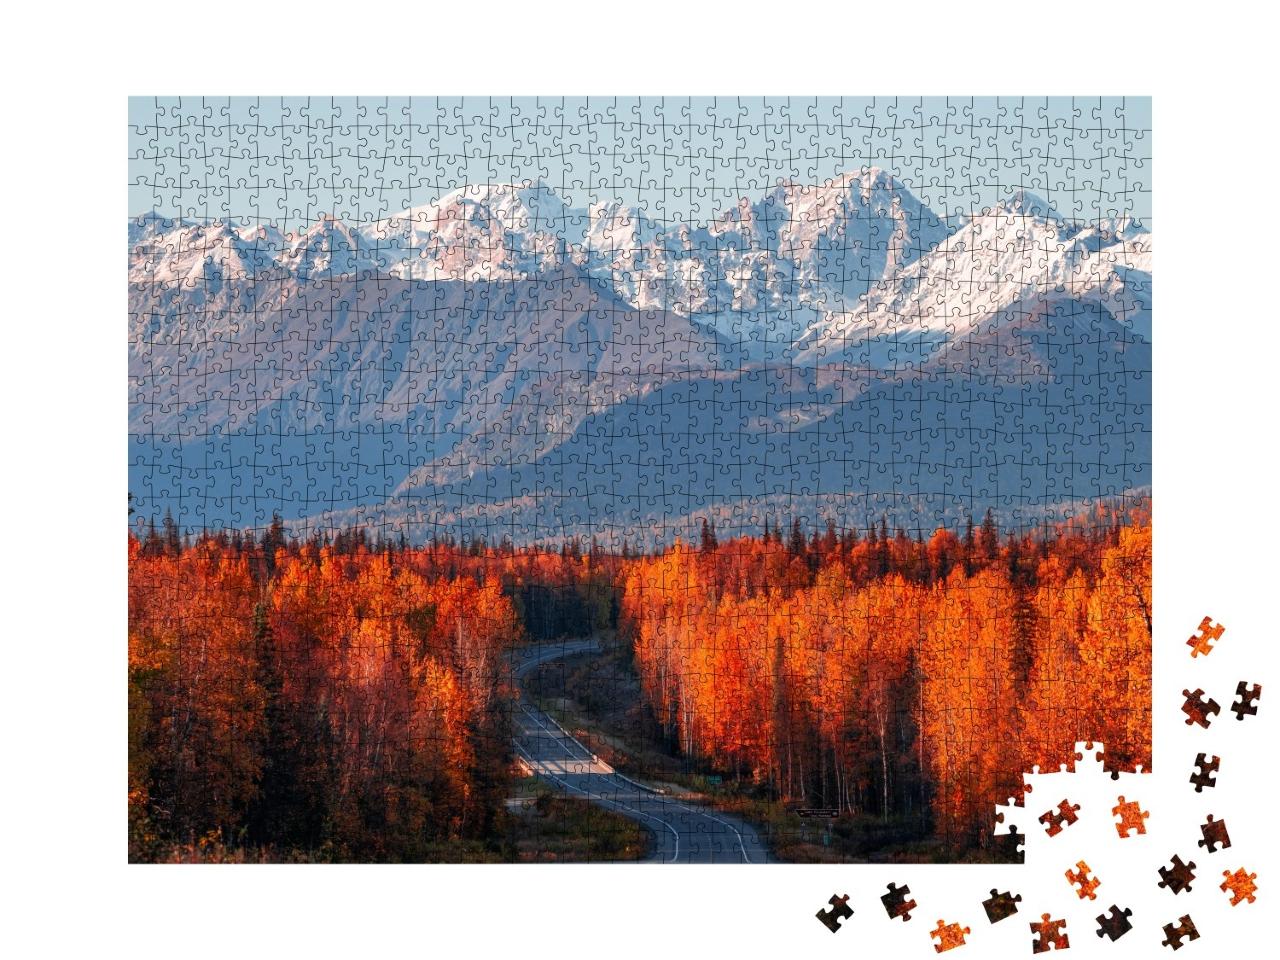 Puzzle de 1000 pièces « Vue sur Denali, le mont Foraker et la chaîne de l'Alaska depuis la Parks Highway »